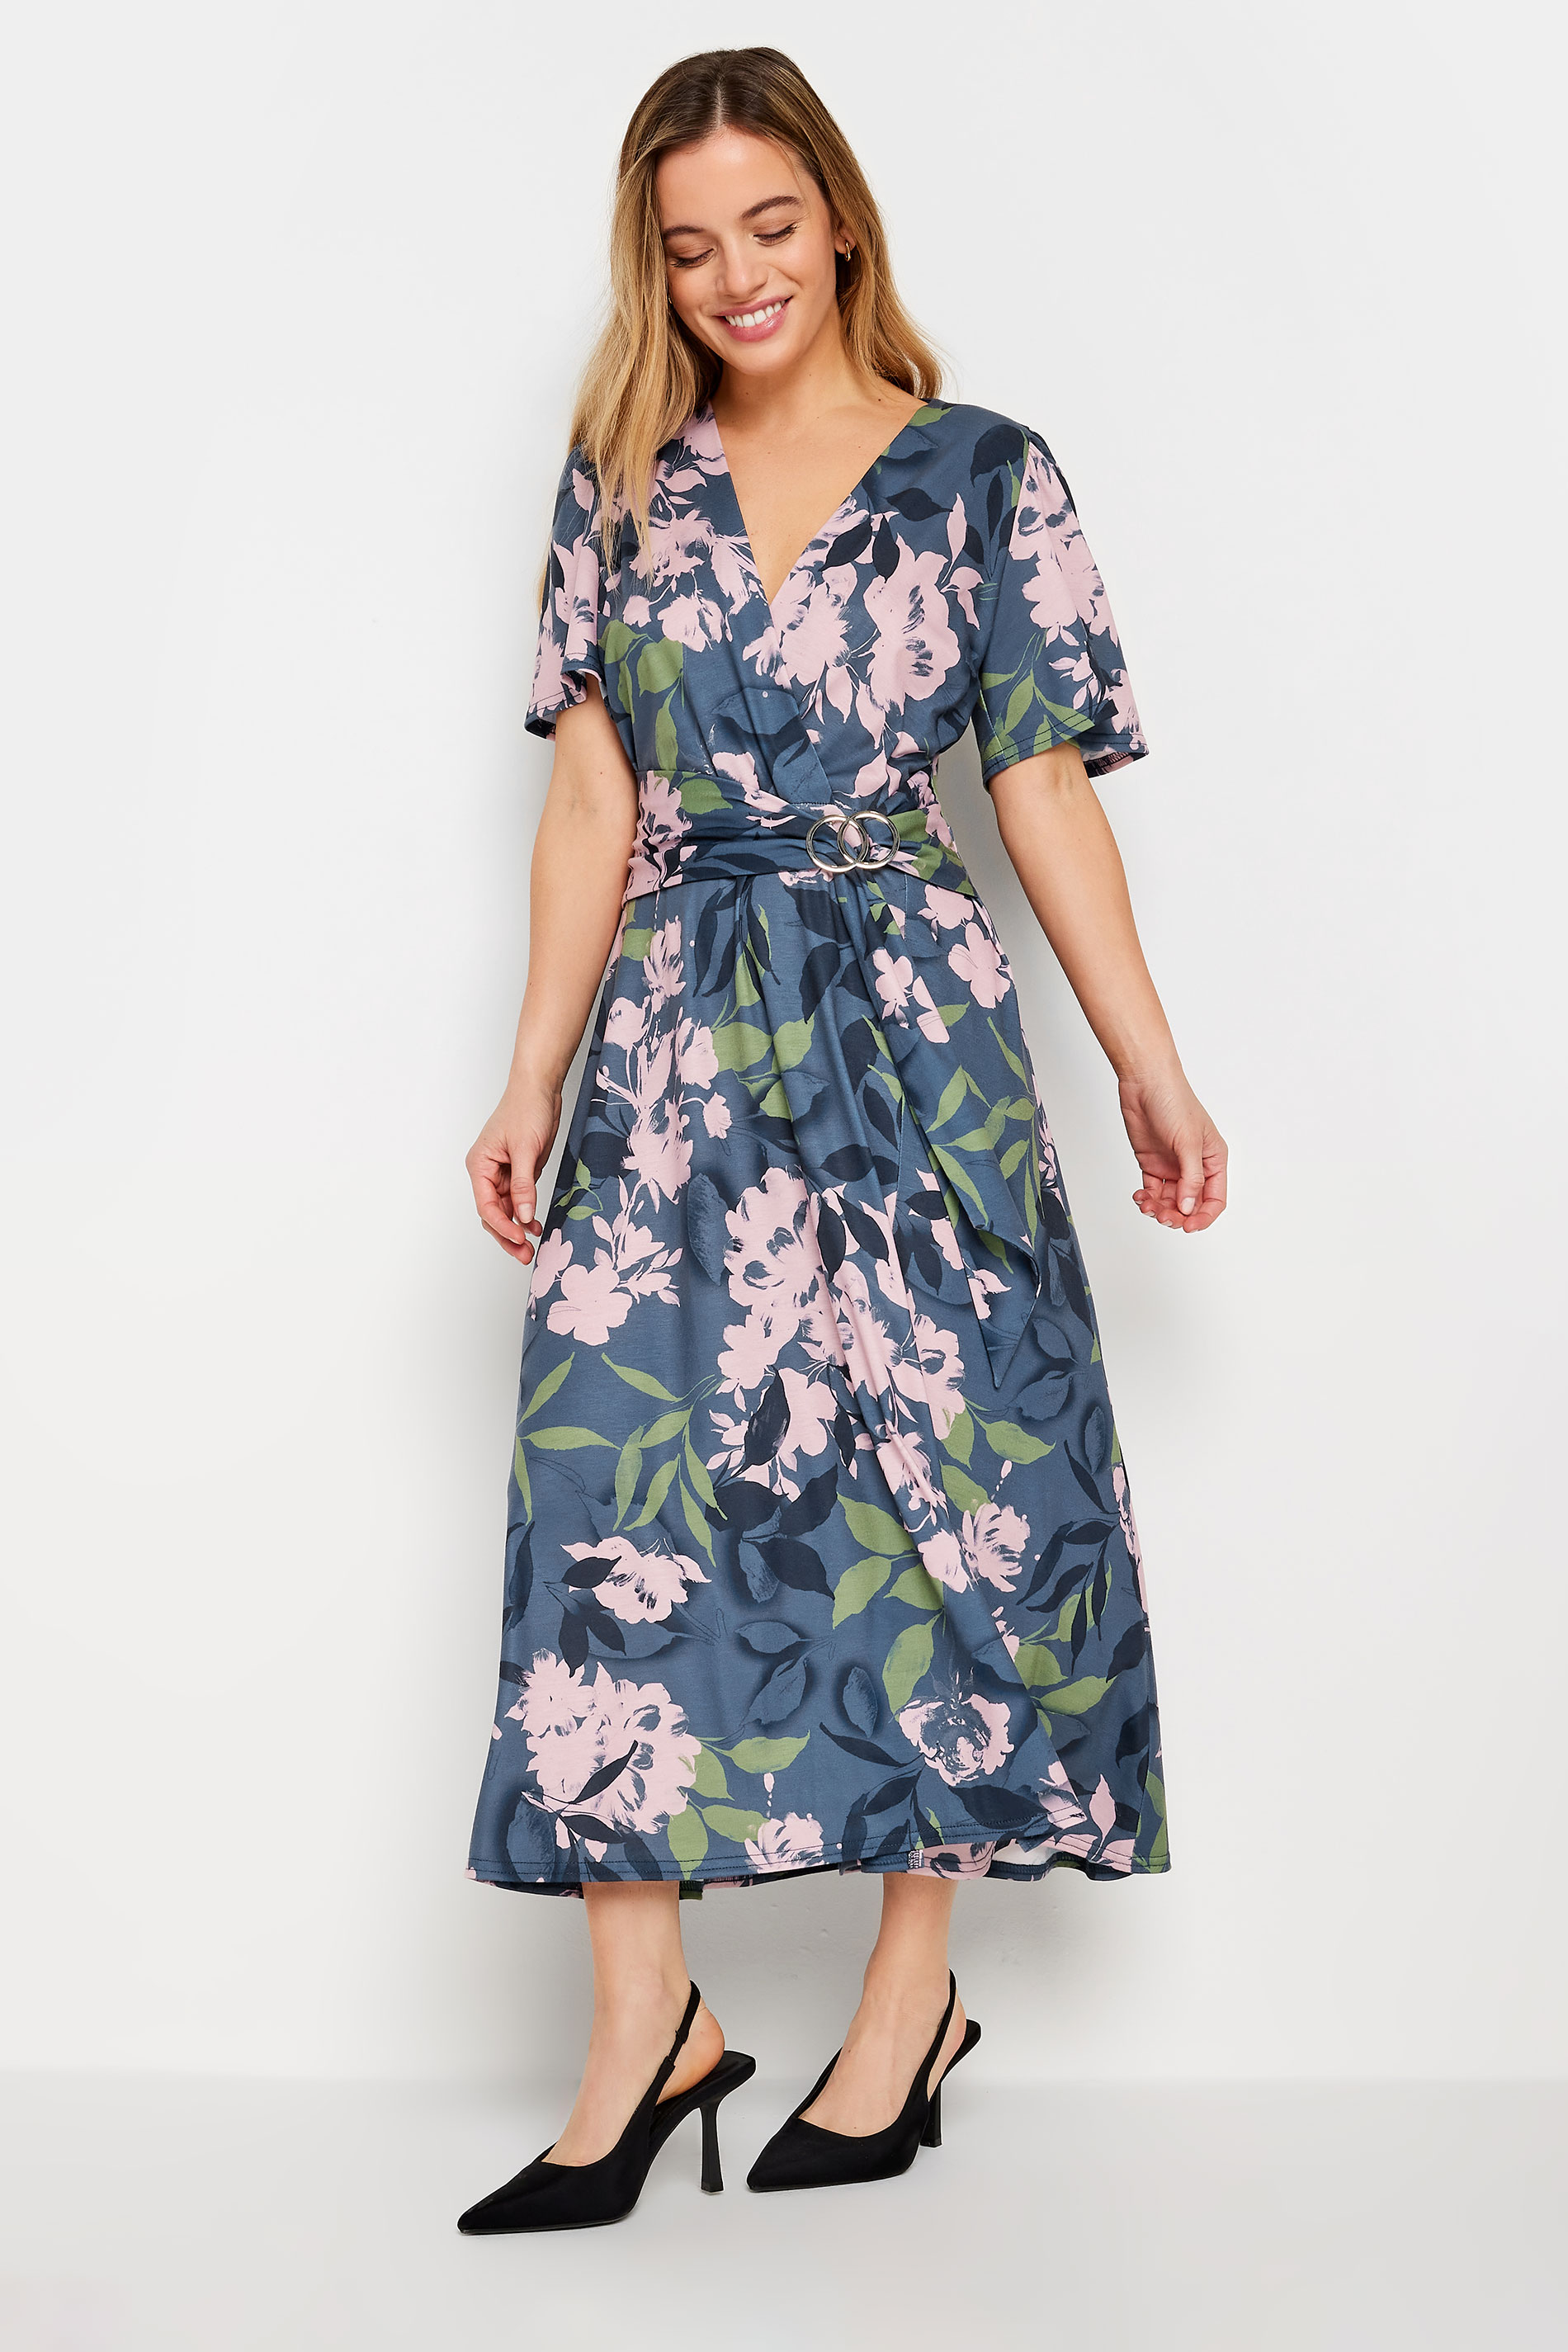 M&Co Petite Blue Floral Belted Wrap Dress | M&Co 2